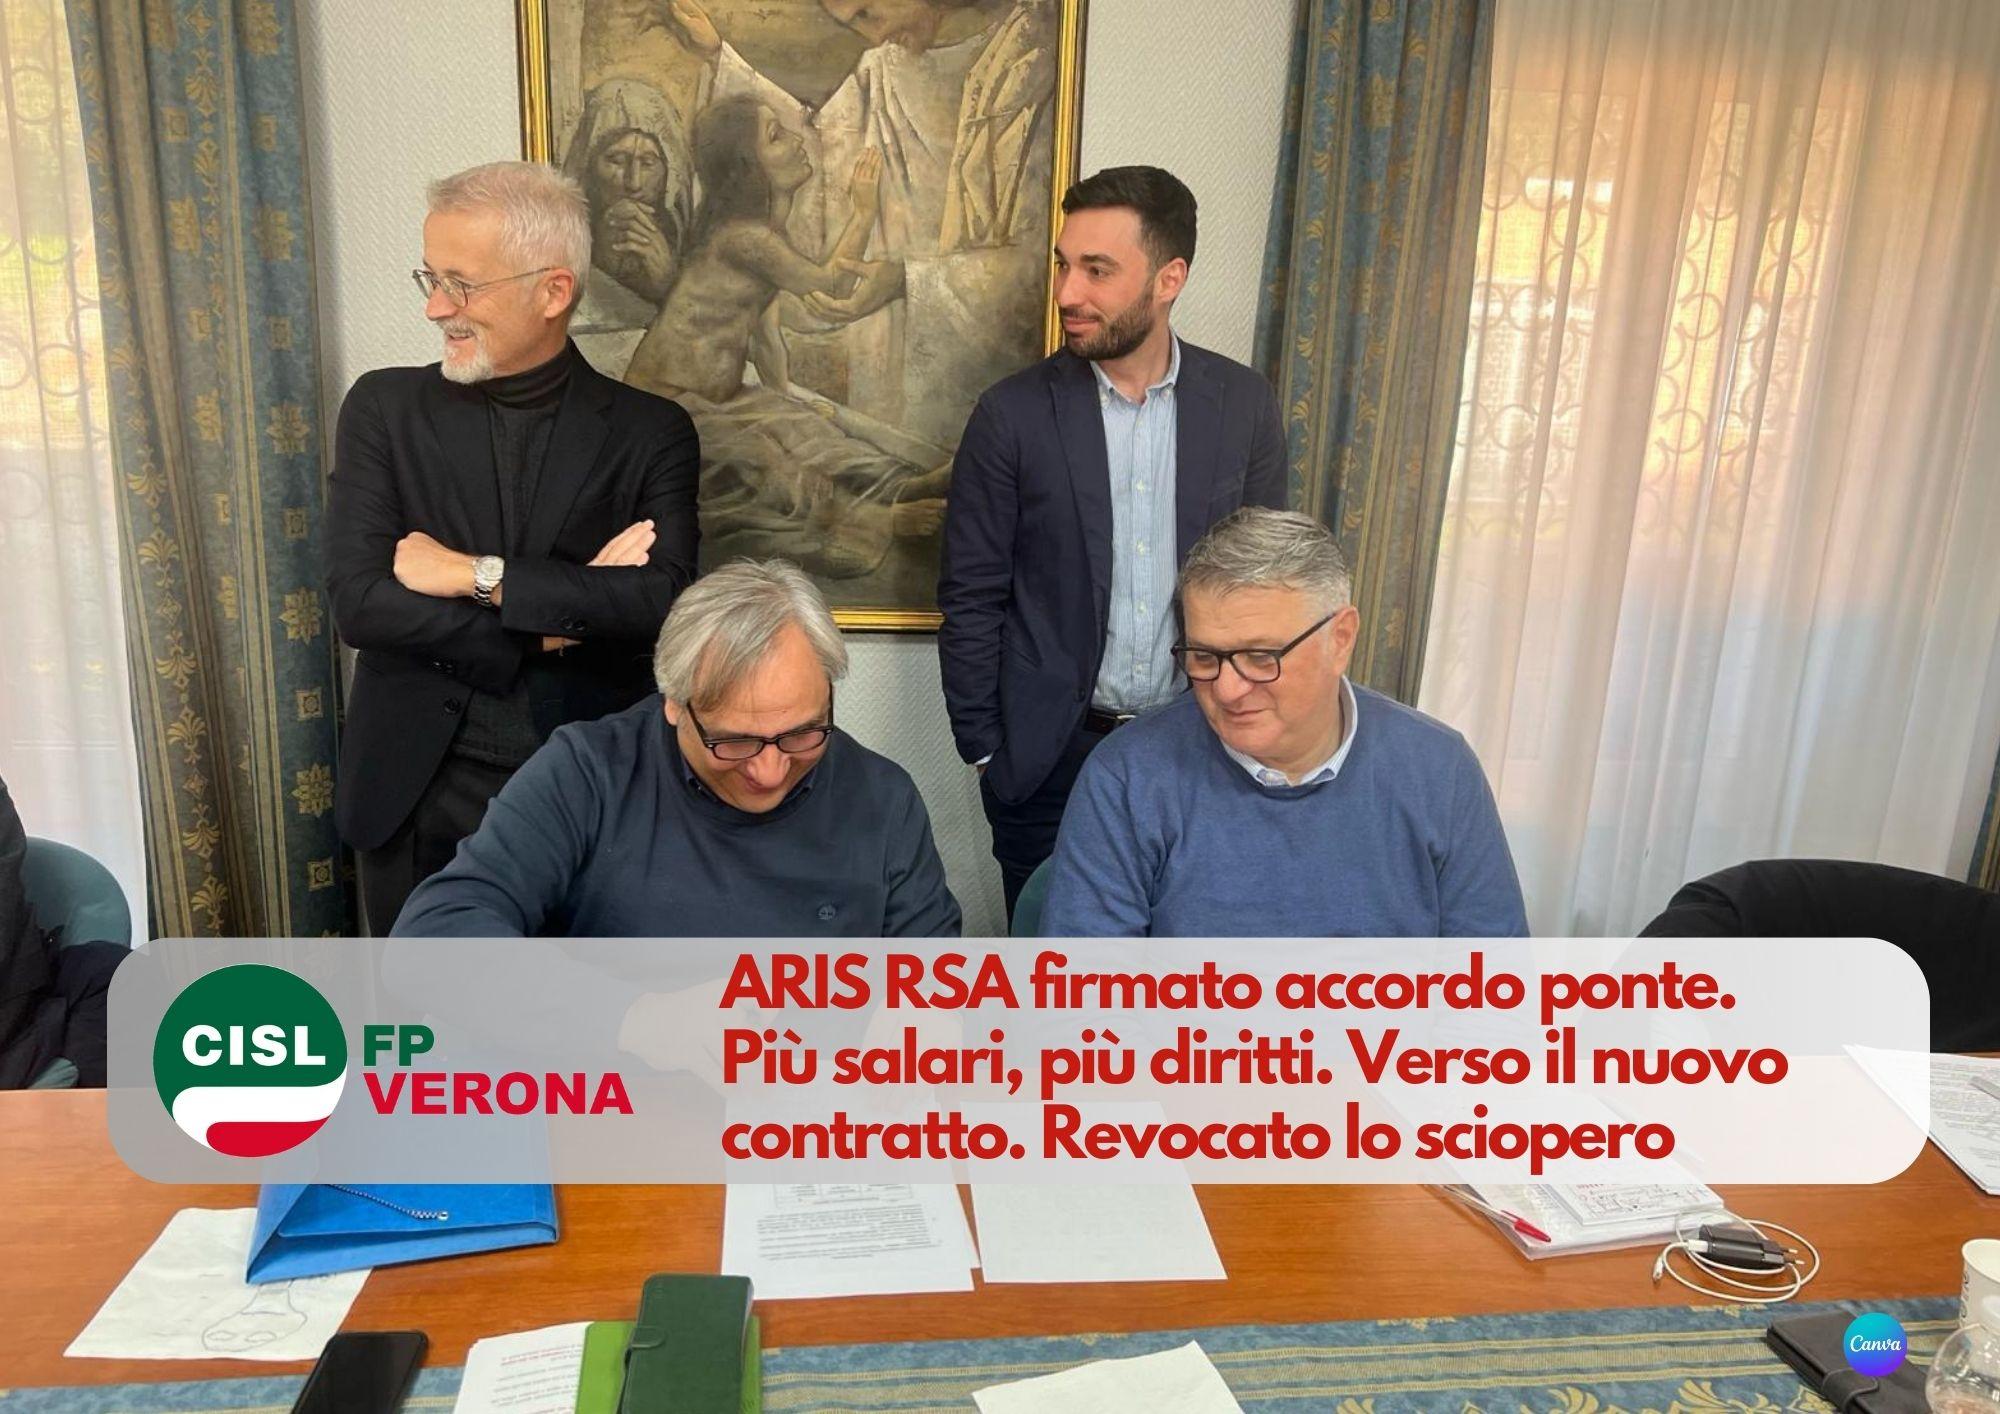 CISL FP Verona. ARIS RSA firmato accordo ponte. Più salari, più diritti. Verso il nuovo contratto